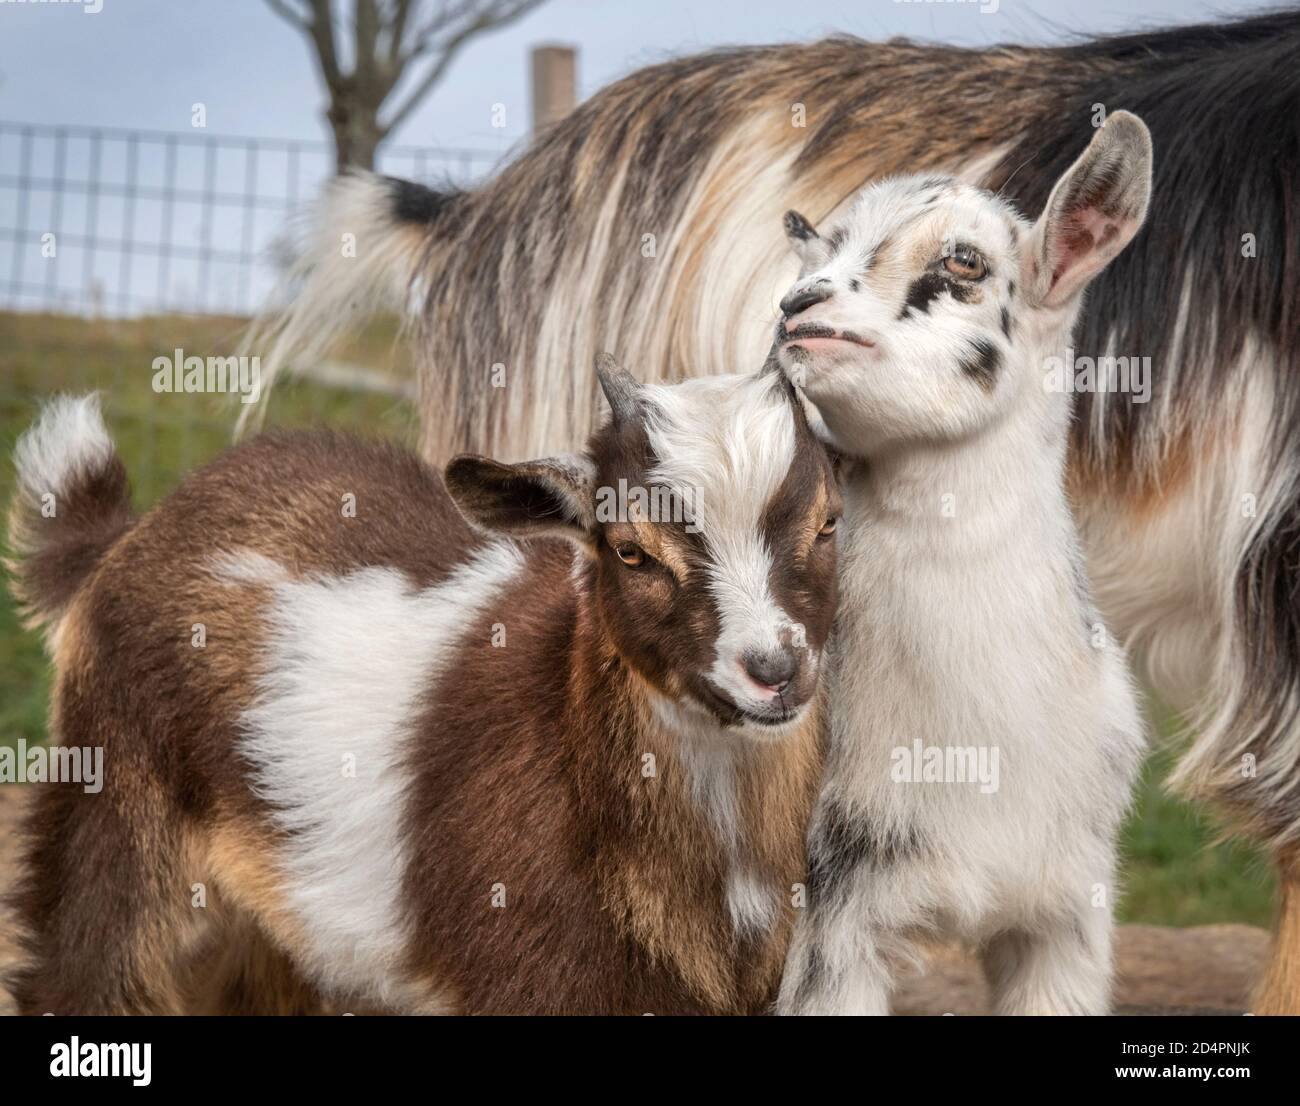 Baby Nigerian Dwarf Goats play Stock Photo